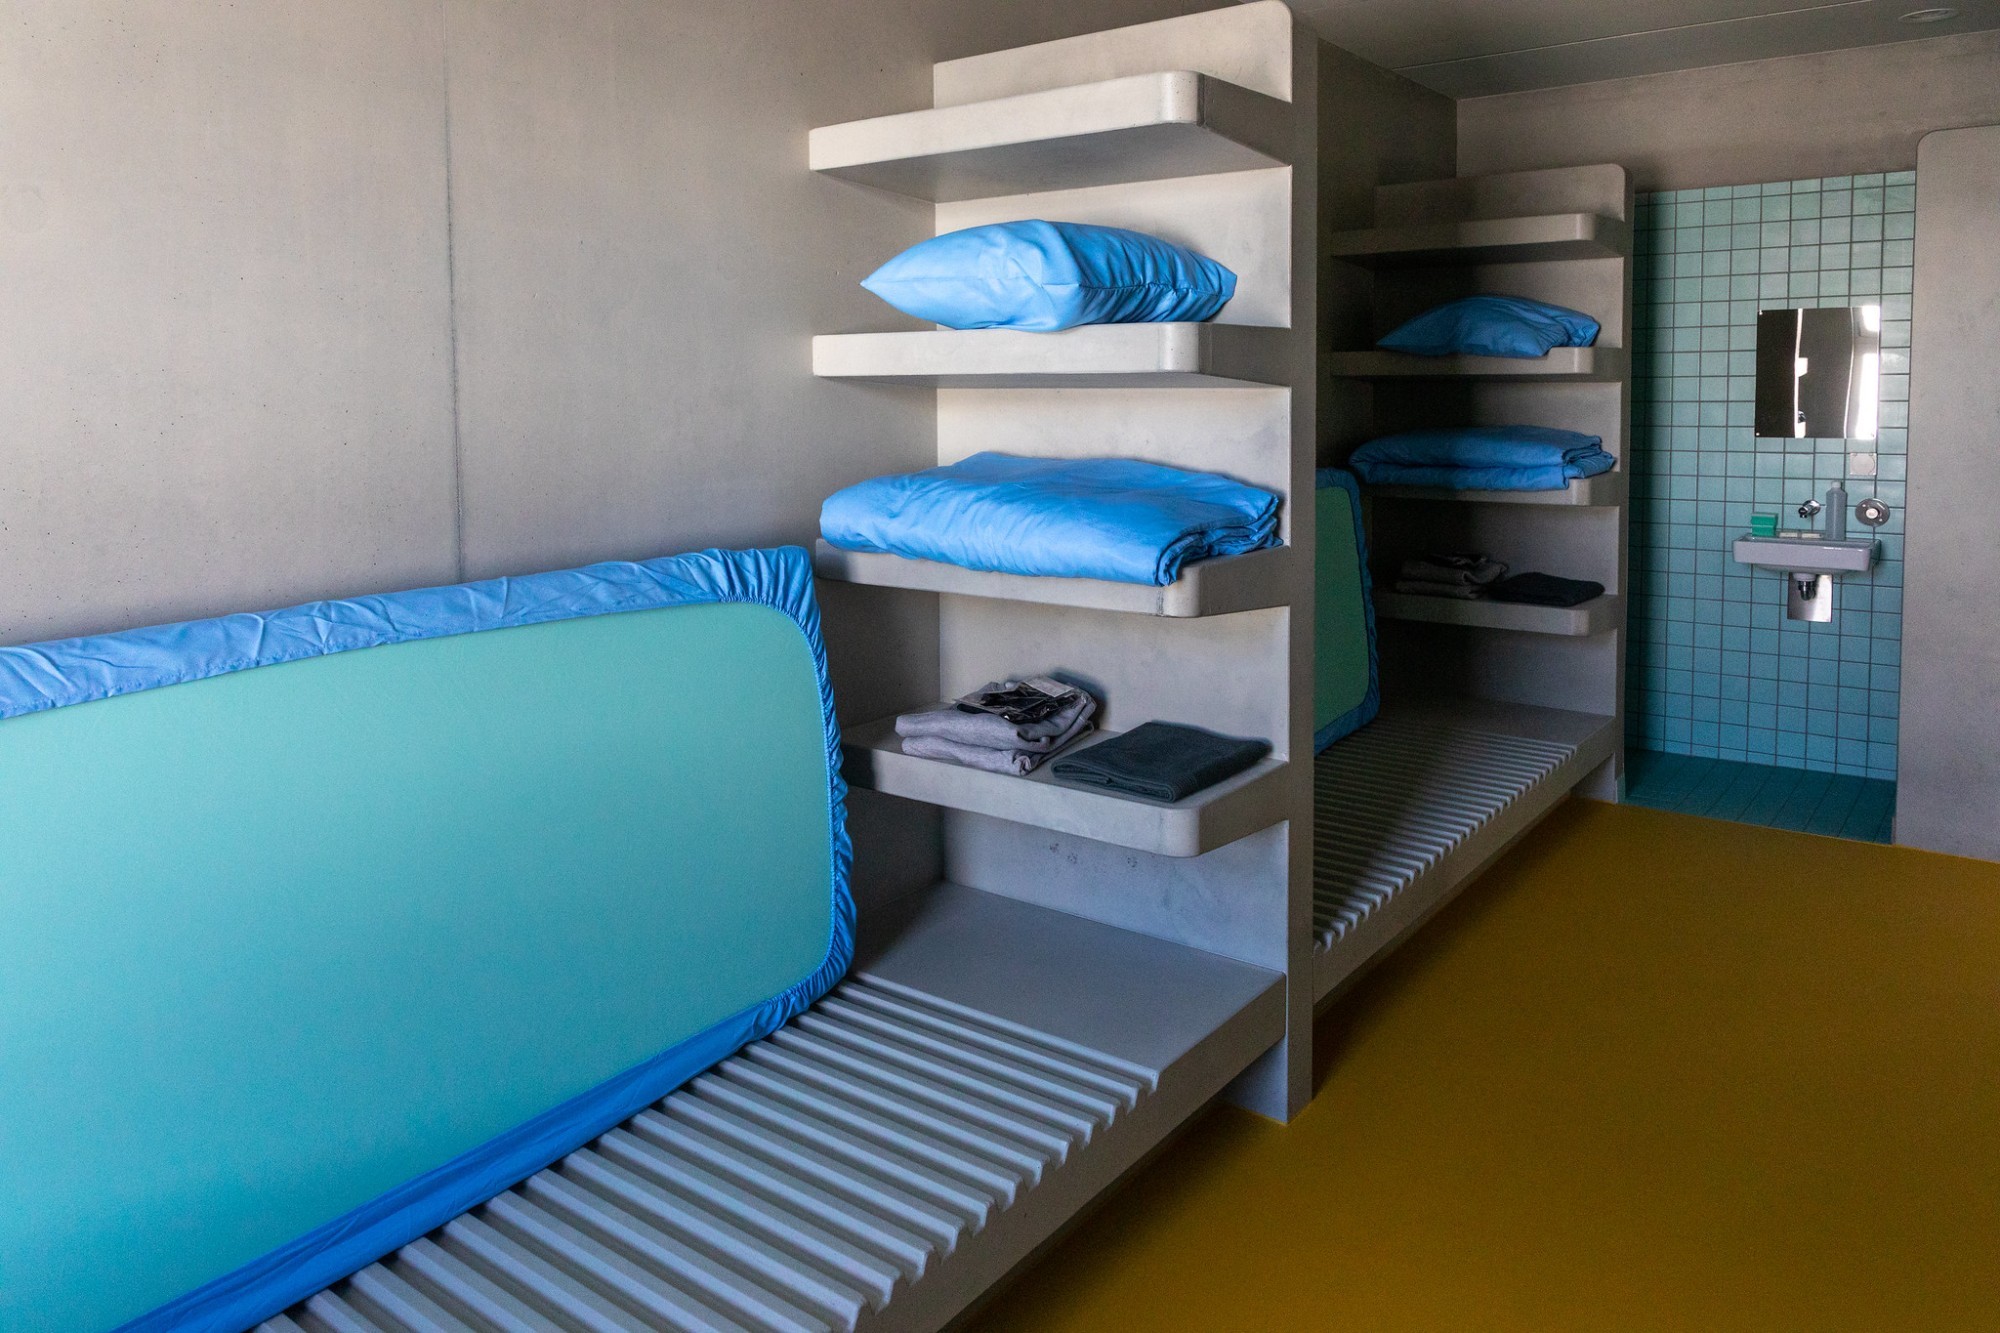 Des cellules modernes et doubles ont été construites afin d' offrir un espace de vie décent aux détenus de l'établissement.